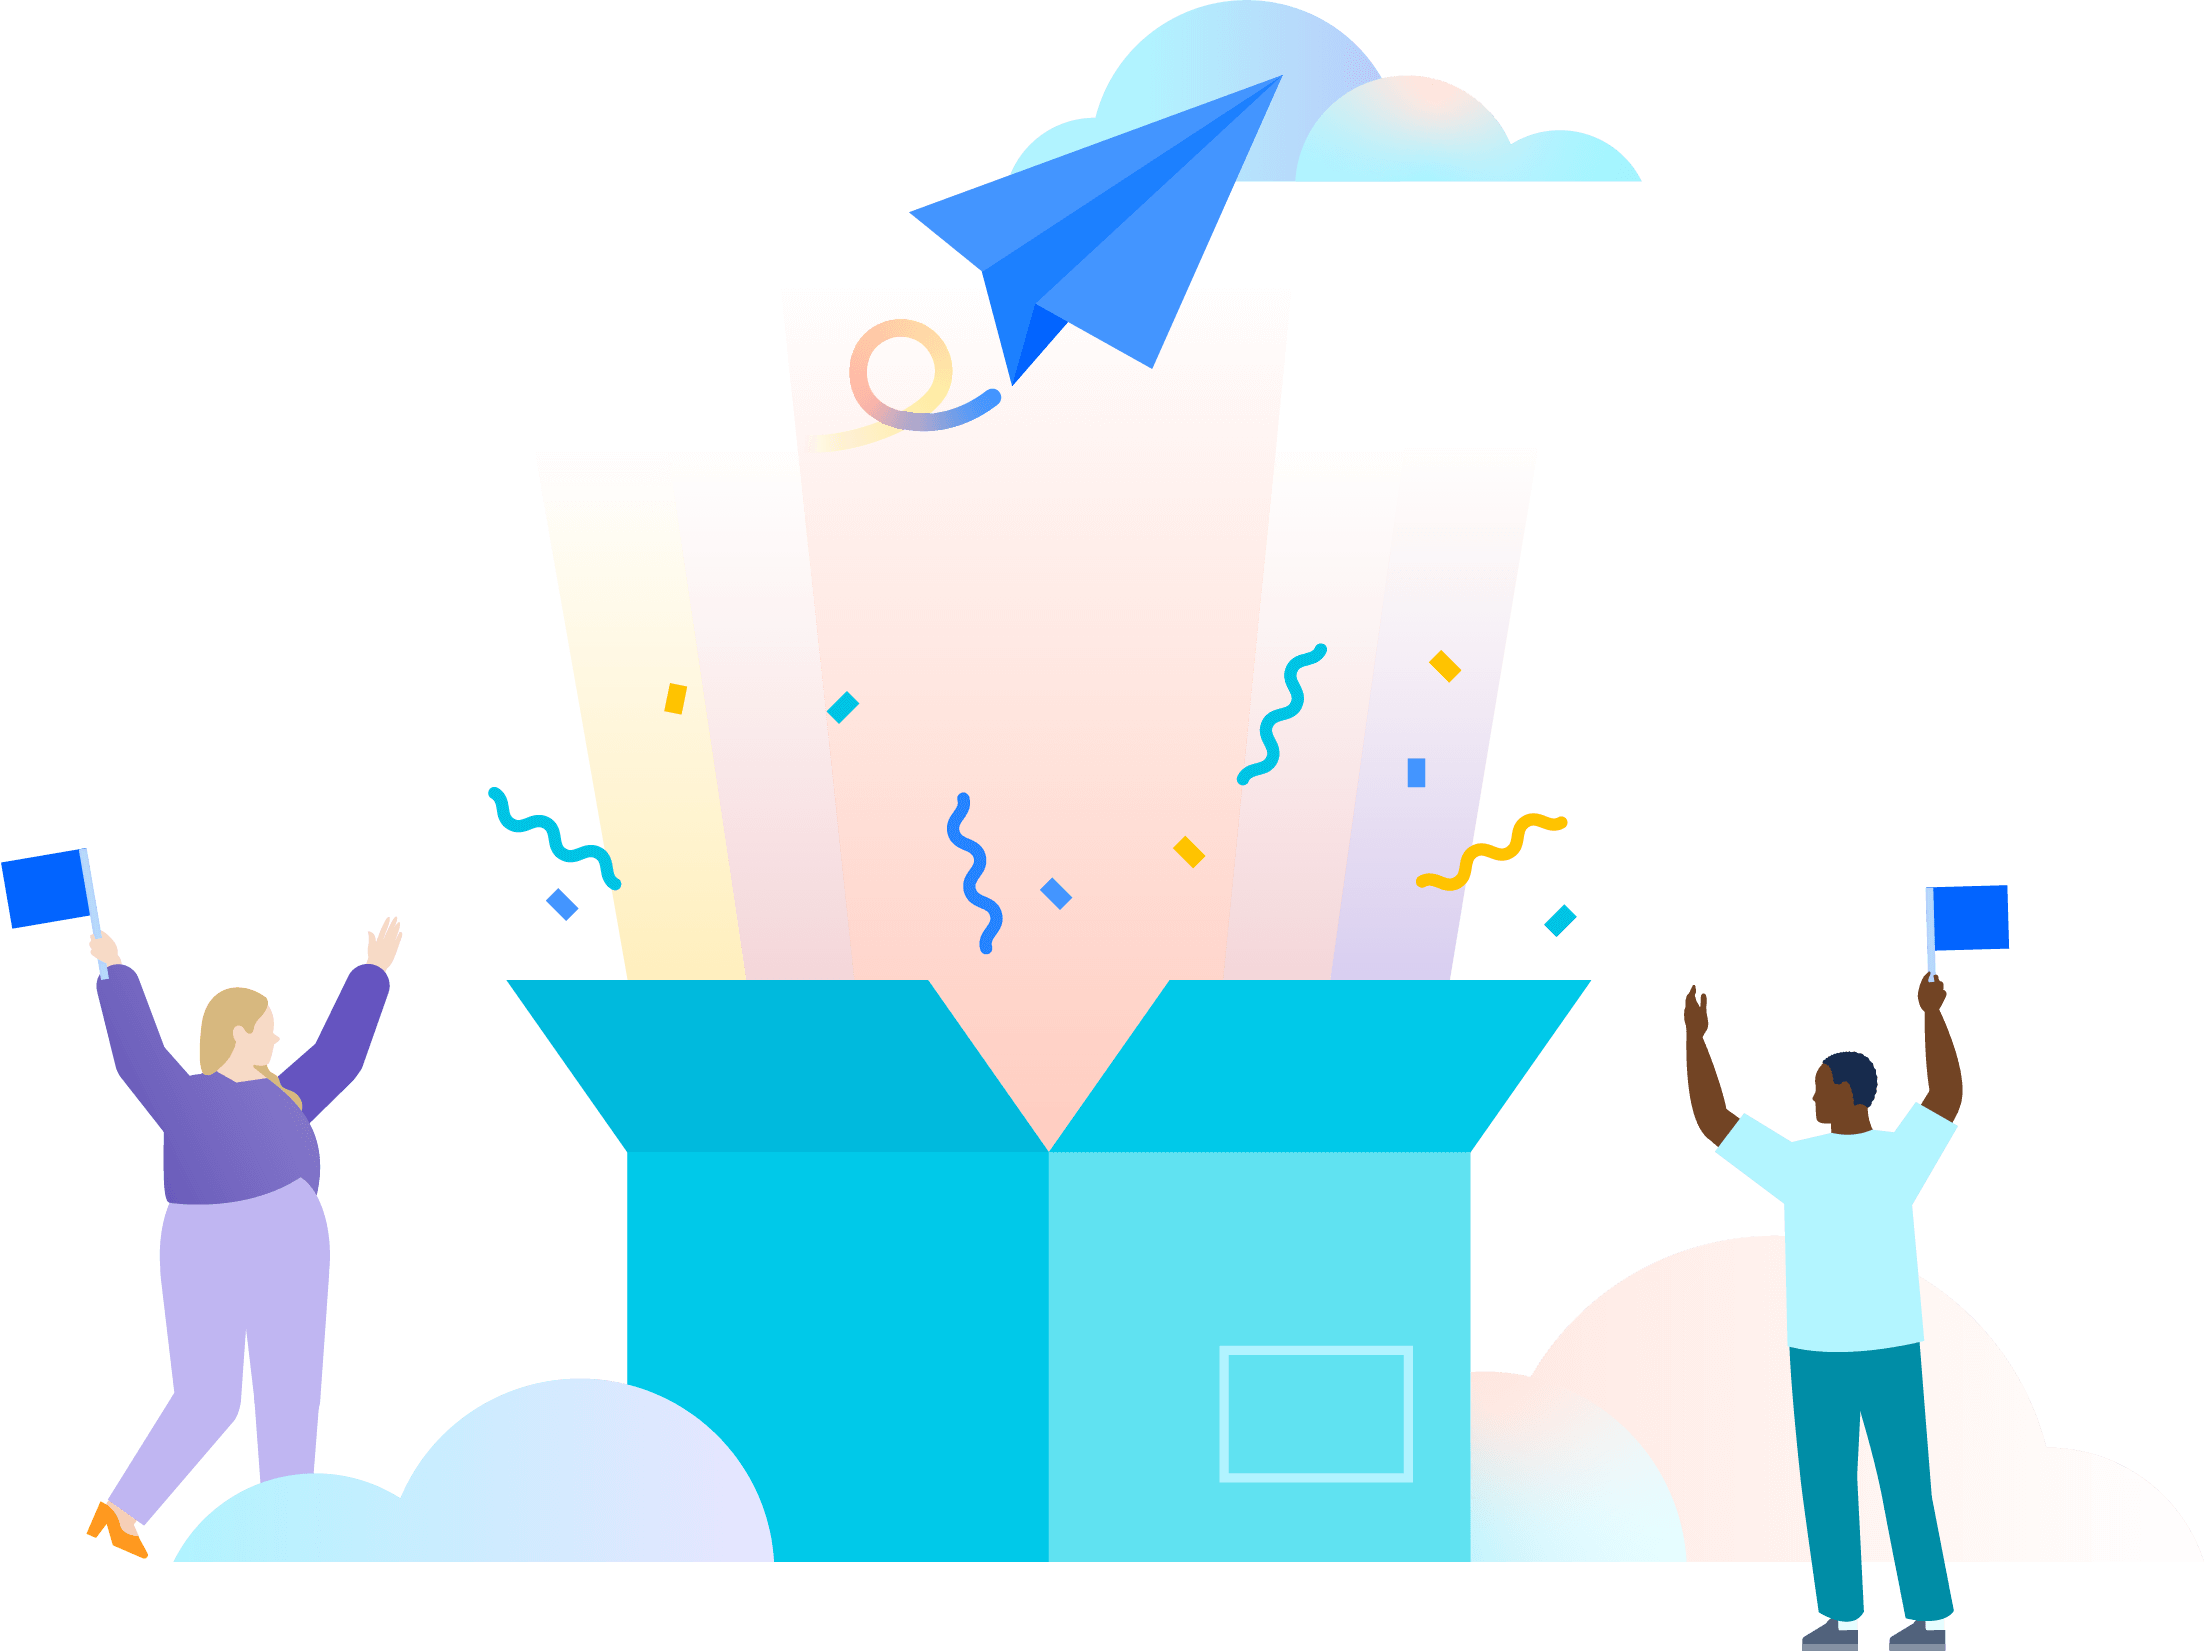 Ilustracja przedstawiająca dwoje ludzi świętujących otwarcie dużego błękitnego pudełka, z którego wyłaniają się wielobarwne promienie świetlne, konfetti i niebieski papierowy samolot wznoszący się ku chmurom.